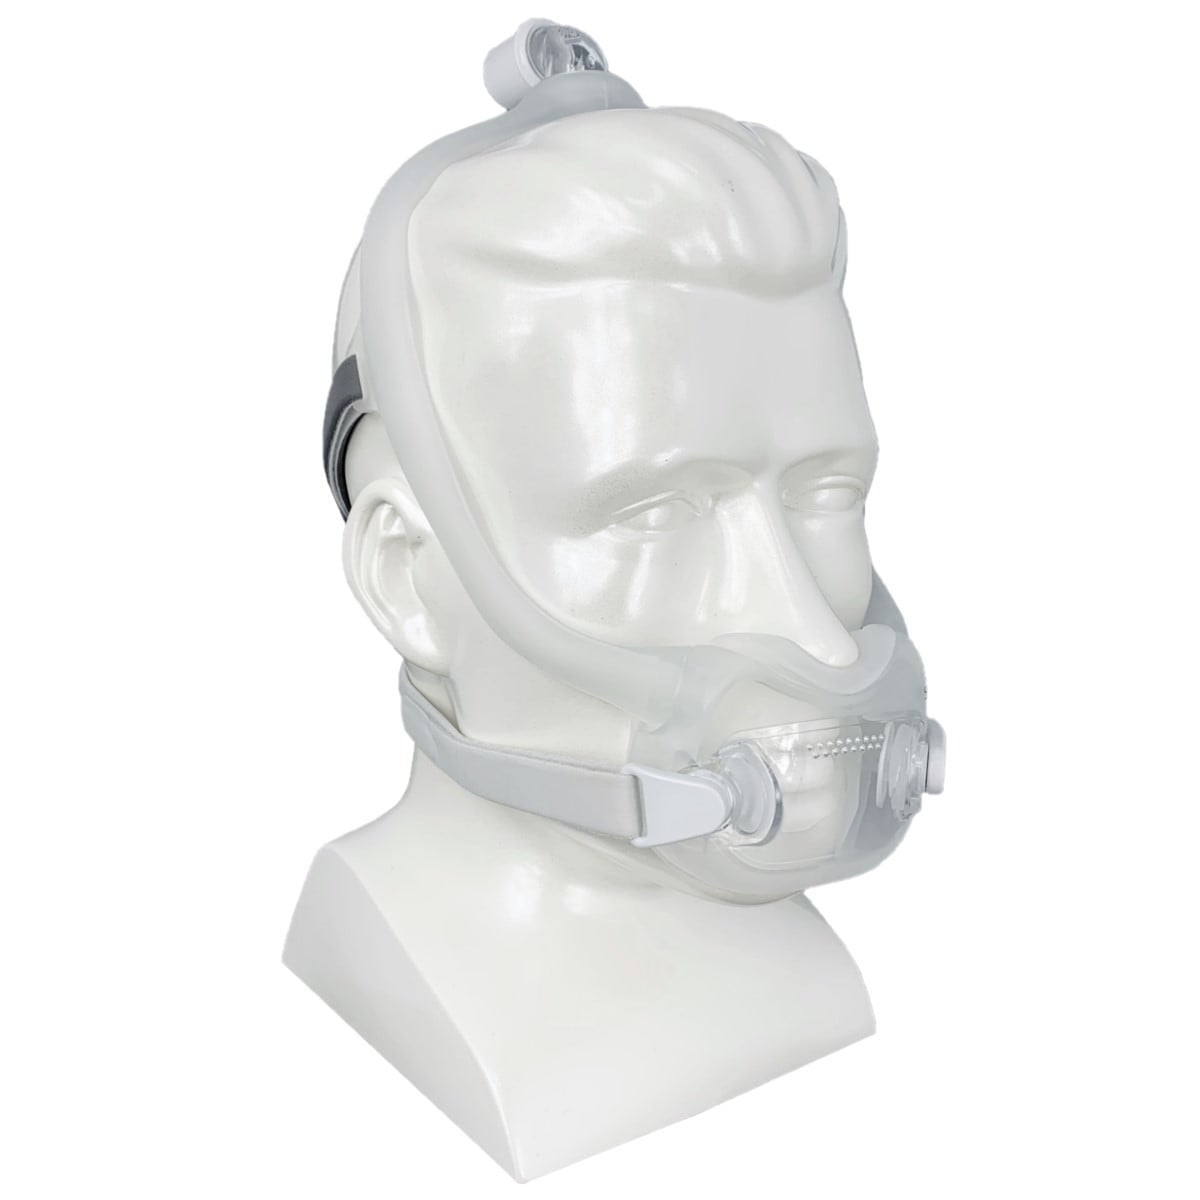 dreamwear-full-face-cpap-mask-with-headgear.01_1_-min_6483502d-7a5e-41e5-8c28-9065d98091d3-1arZkN.jpg